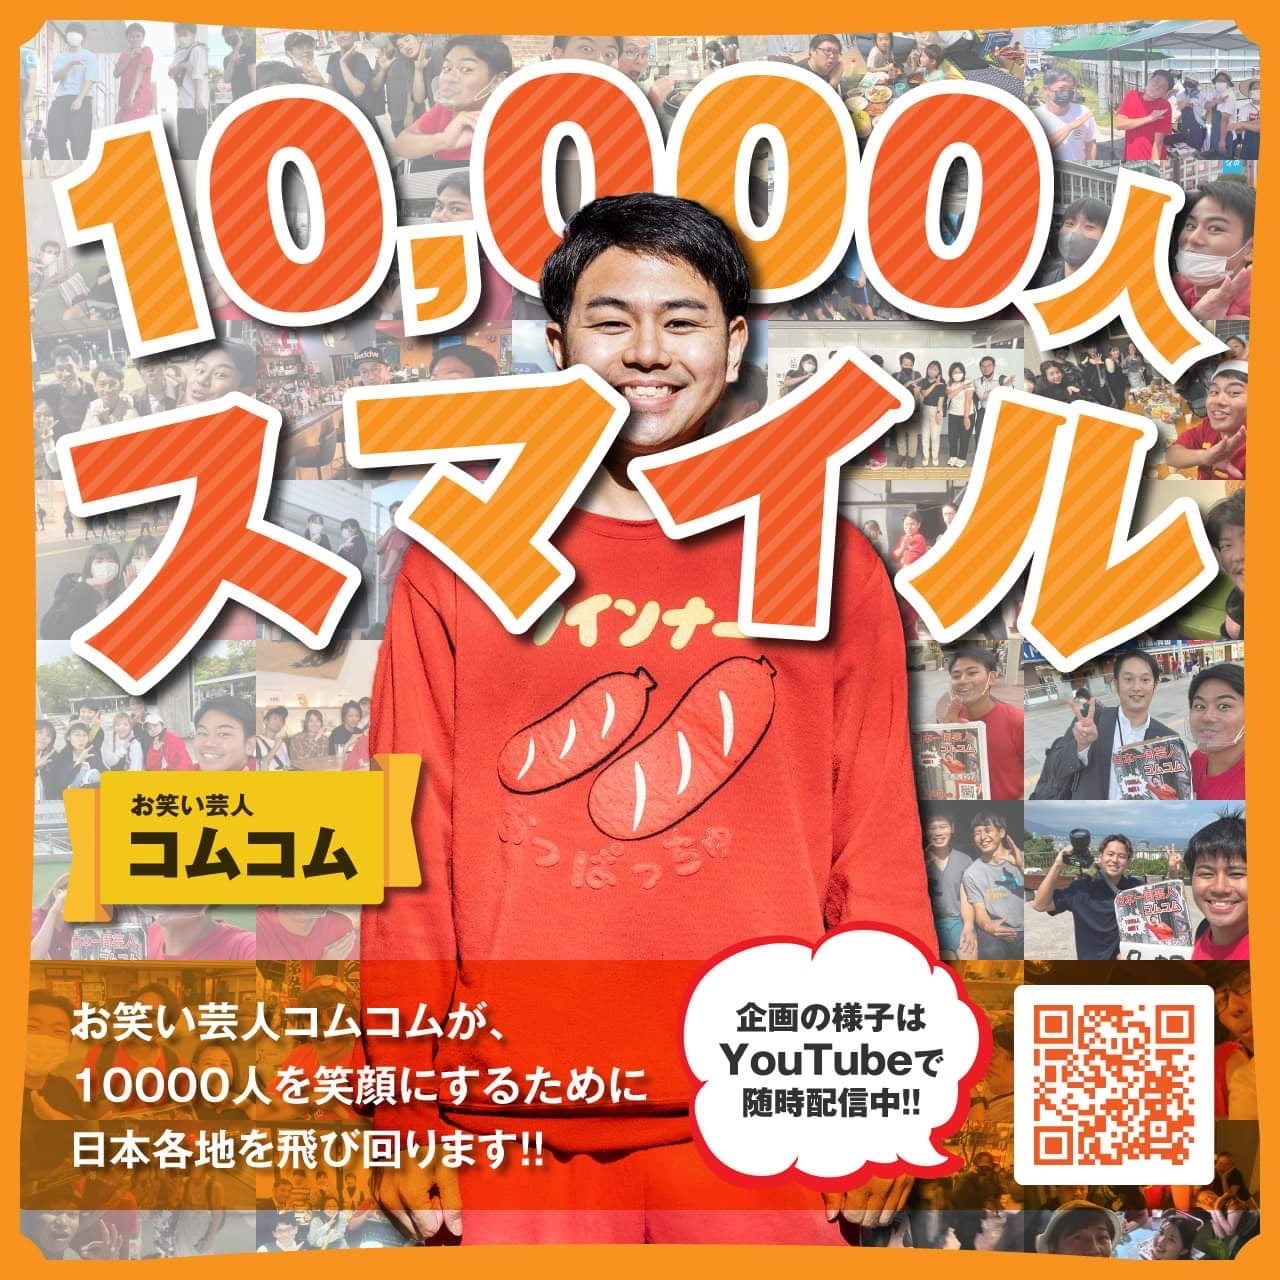 【10,000 + 3】人を笑顔にしたい元看護師芸人。ヒッチハイクで日本全国に元気を届ける挑戦のサブ画像1